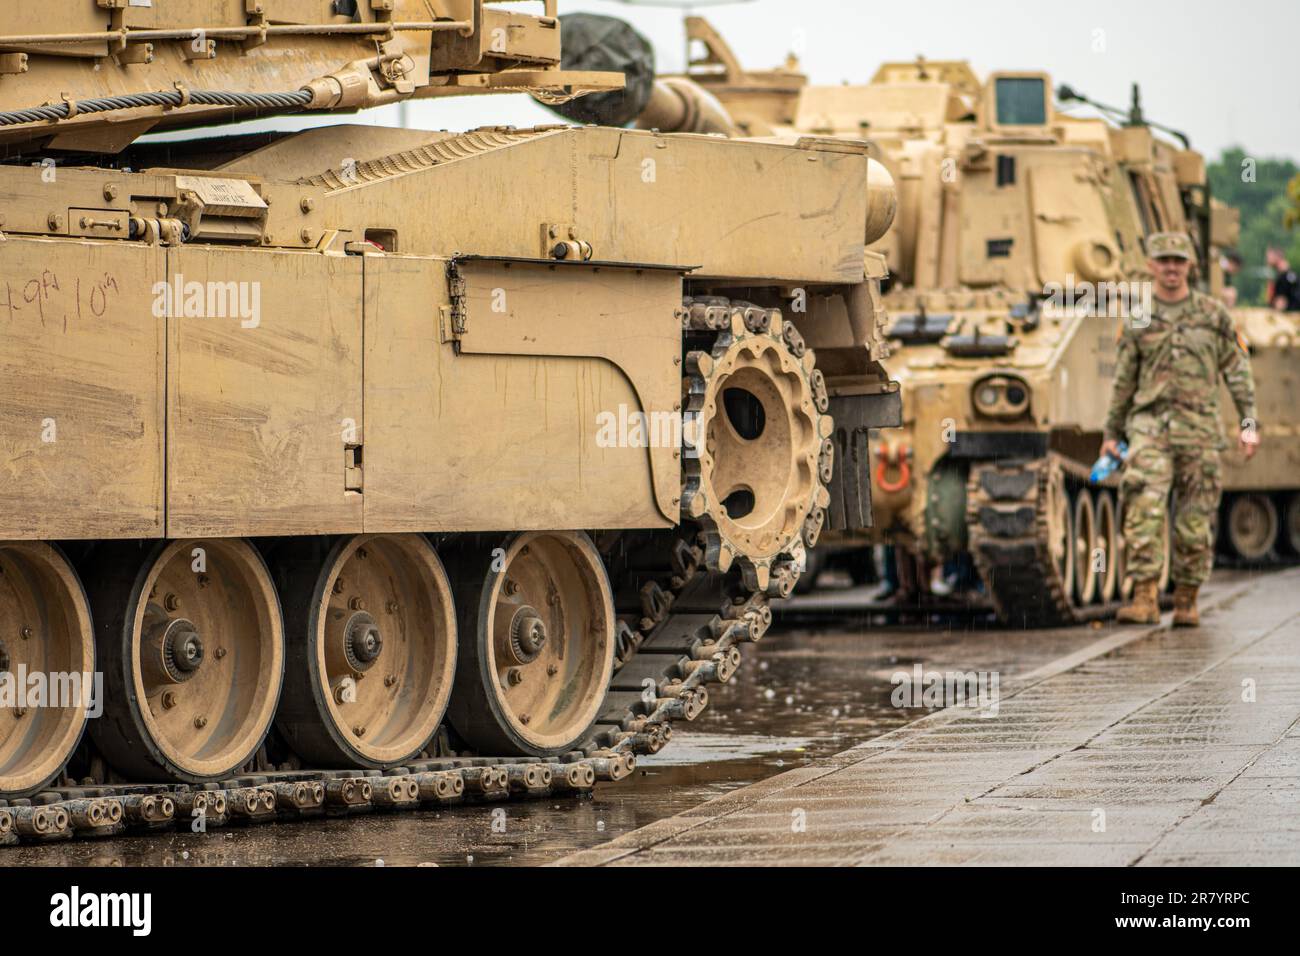 Un soldat du corps des Marines américain marchant sous la pluie près des chars blindés Abrams en mouvement, force de réaction de l'OTAN Banque D'Images